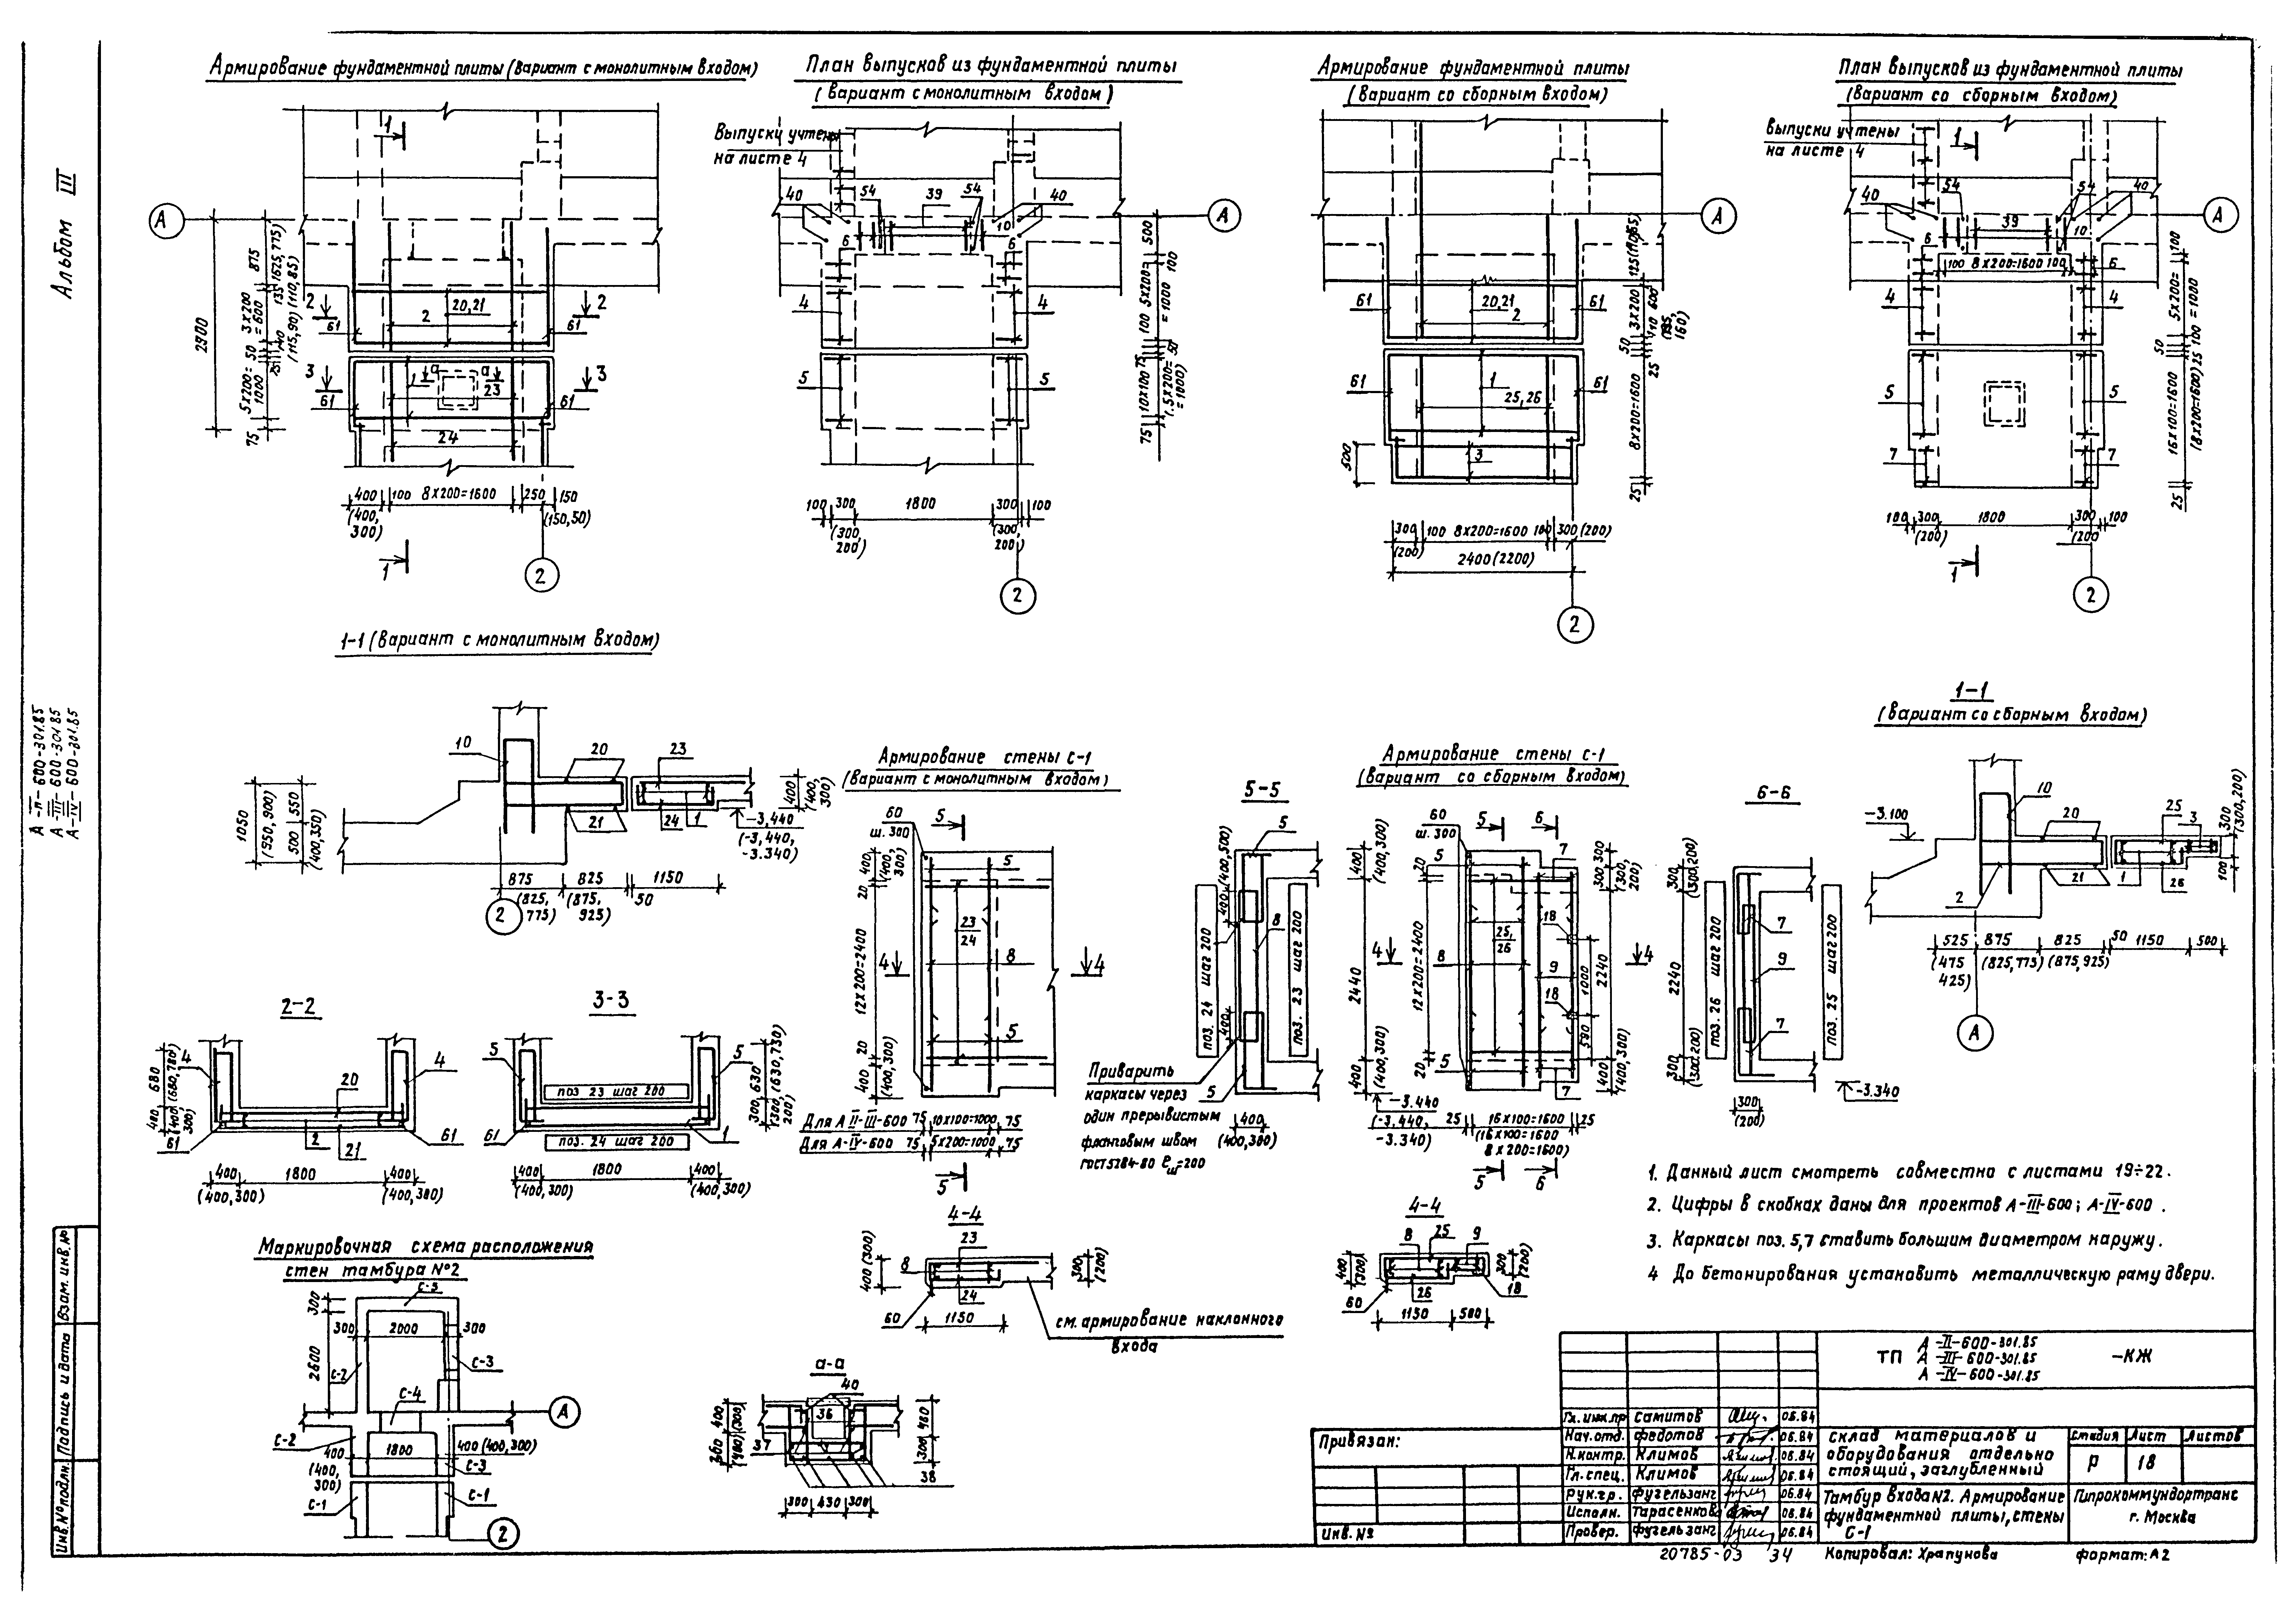 Типовой проект А-II,III,IV-600-301.85